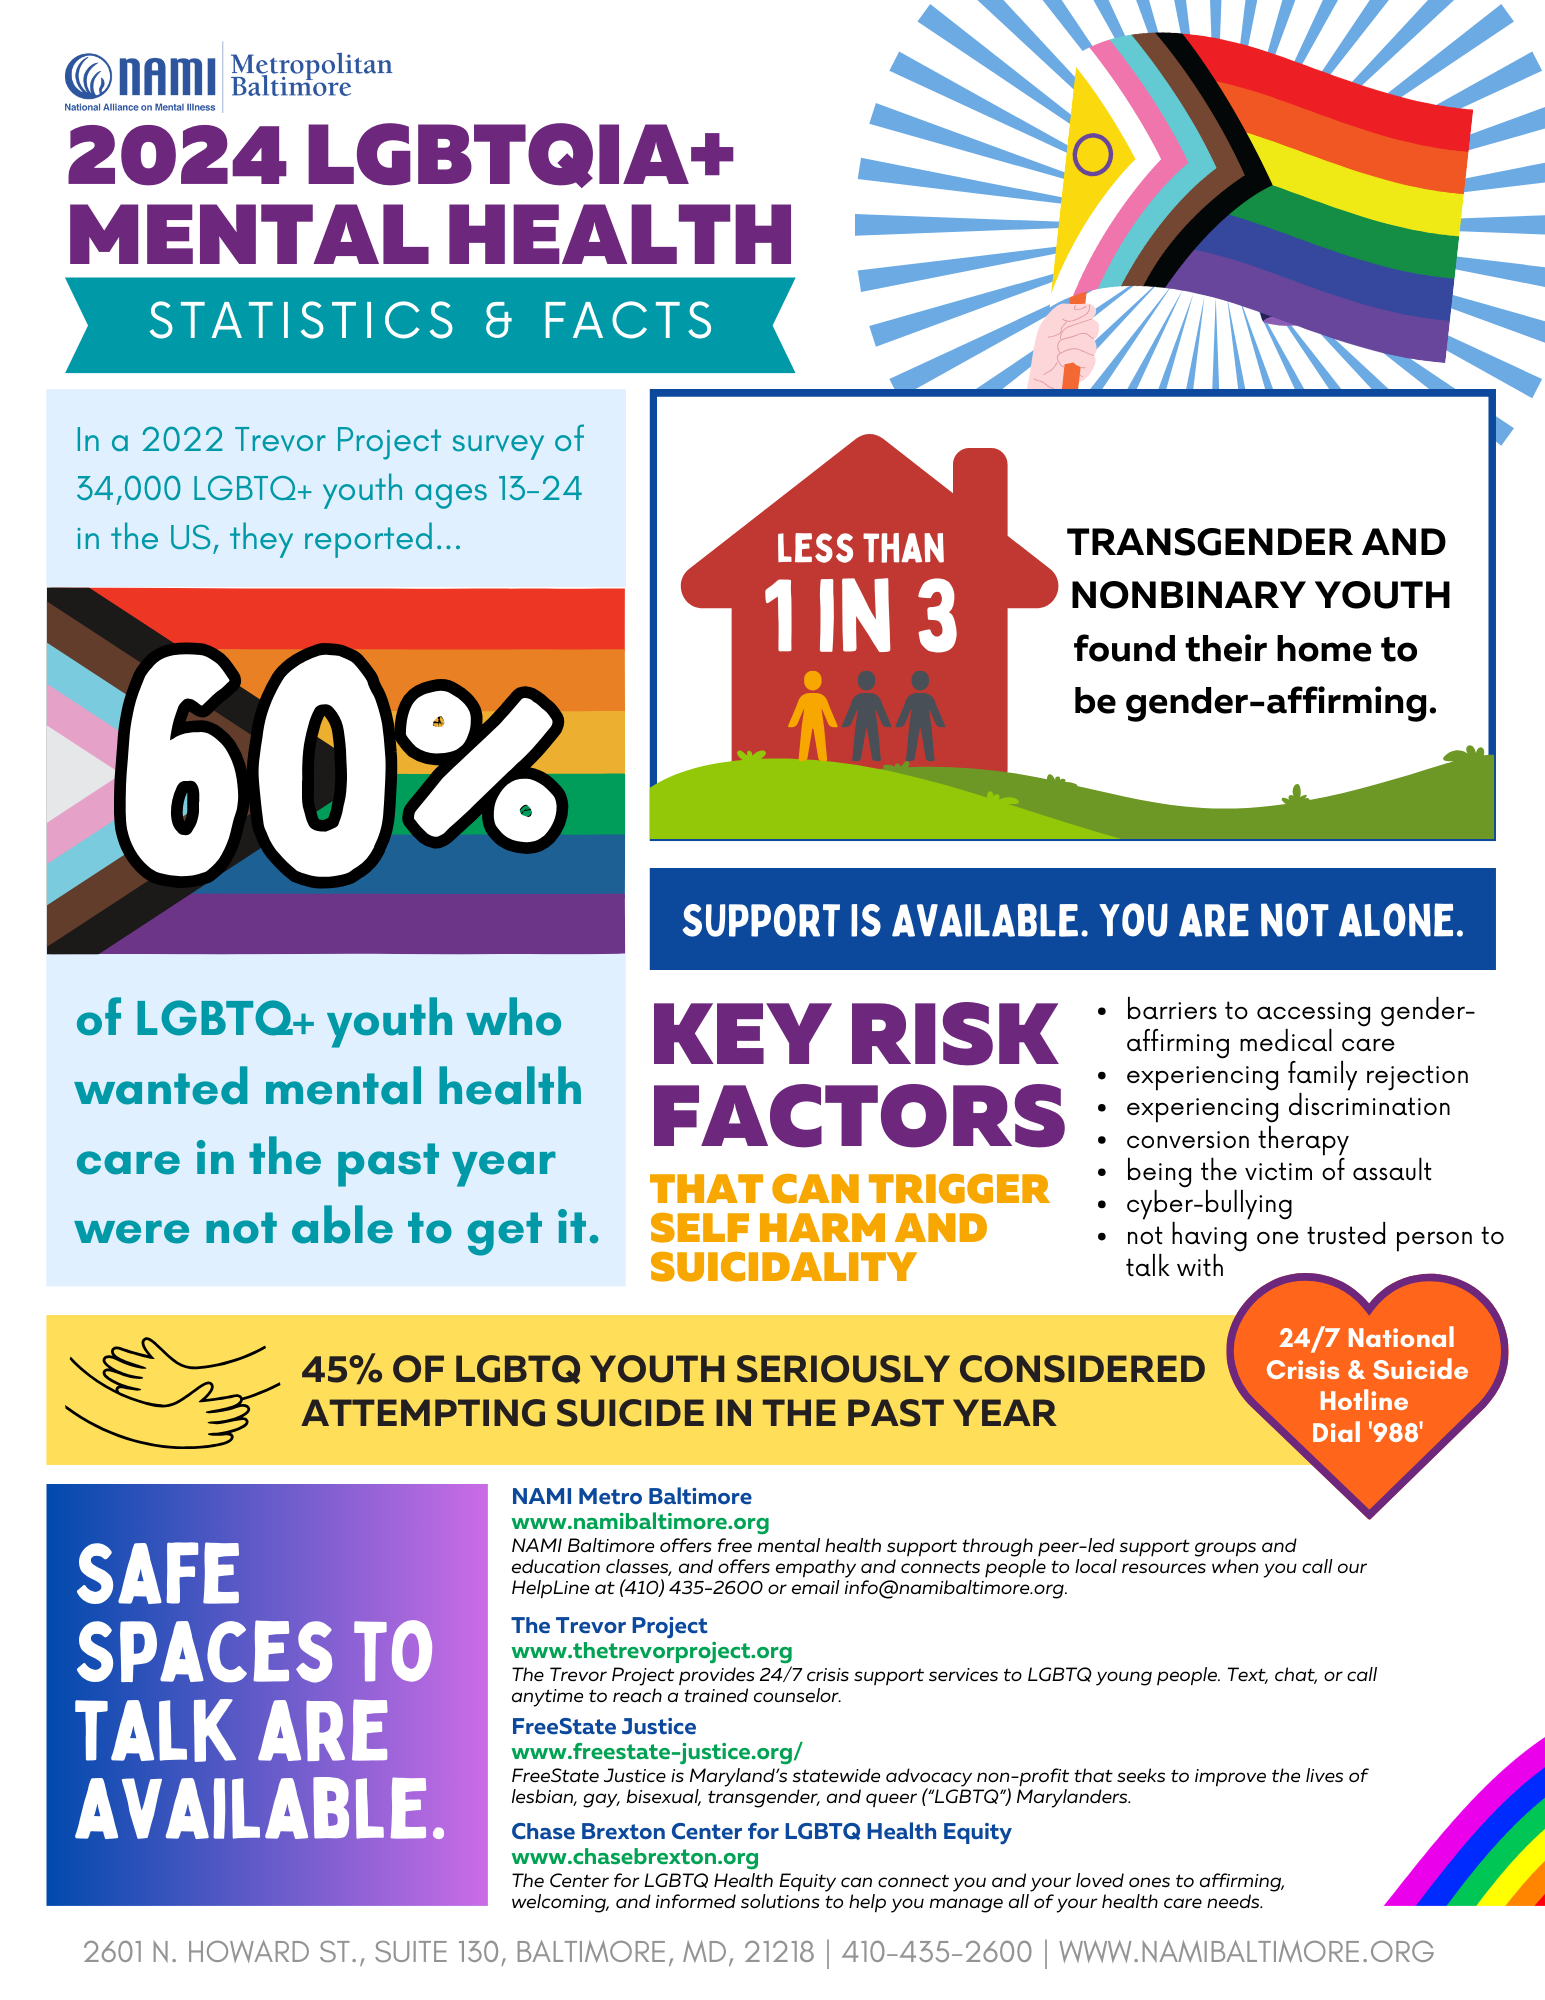 LGBTQIA+ Mental Health Fast Facts